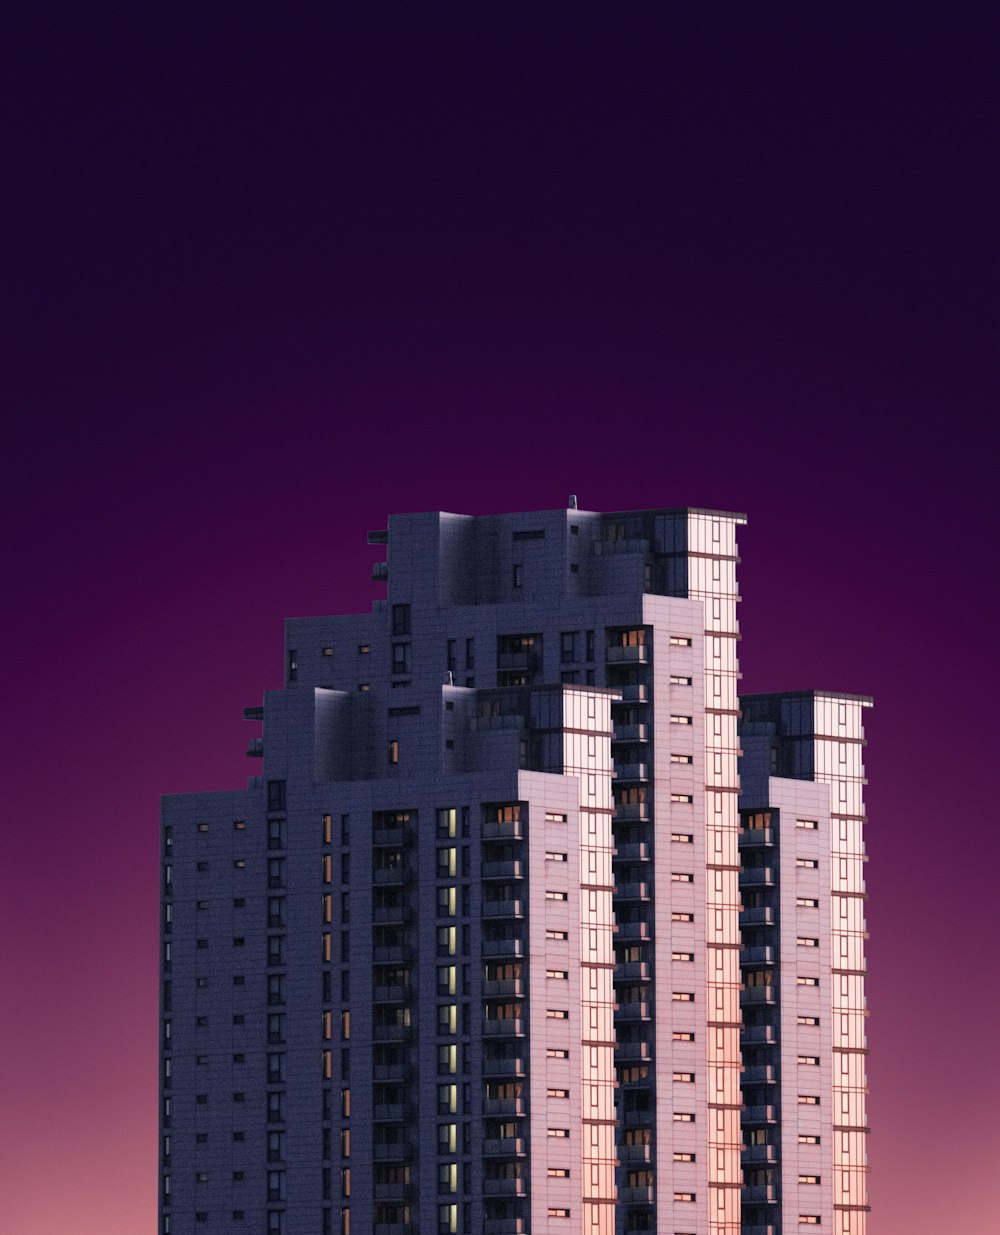 edifício de concreto cinza durante a noite